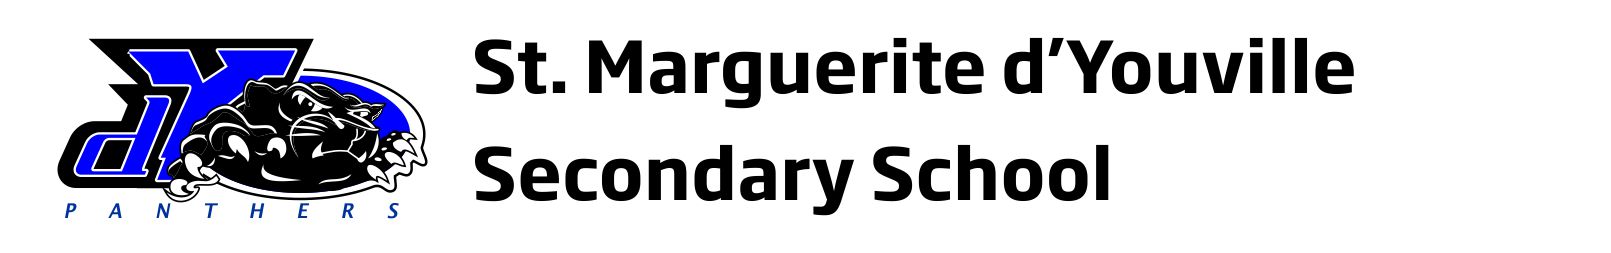 St. Marguerite d'Youville Secondary School Logo